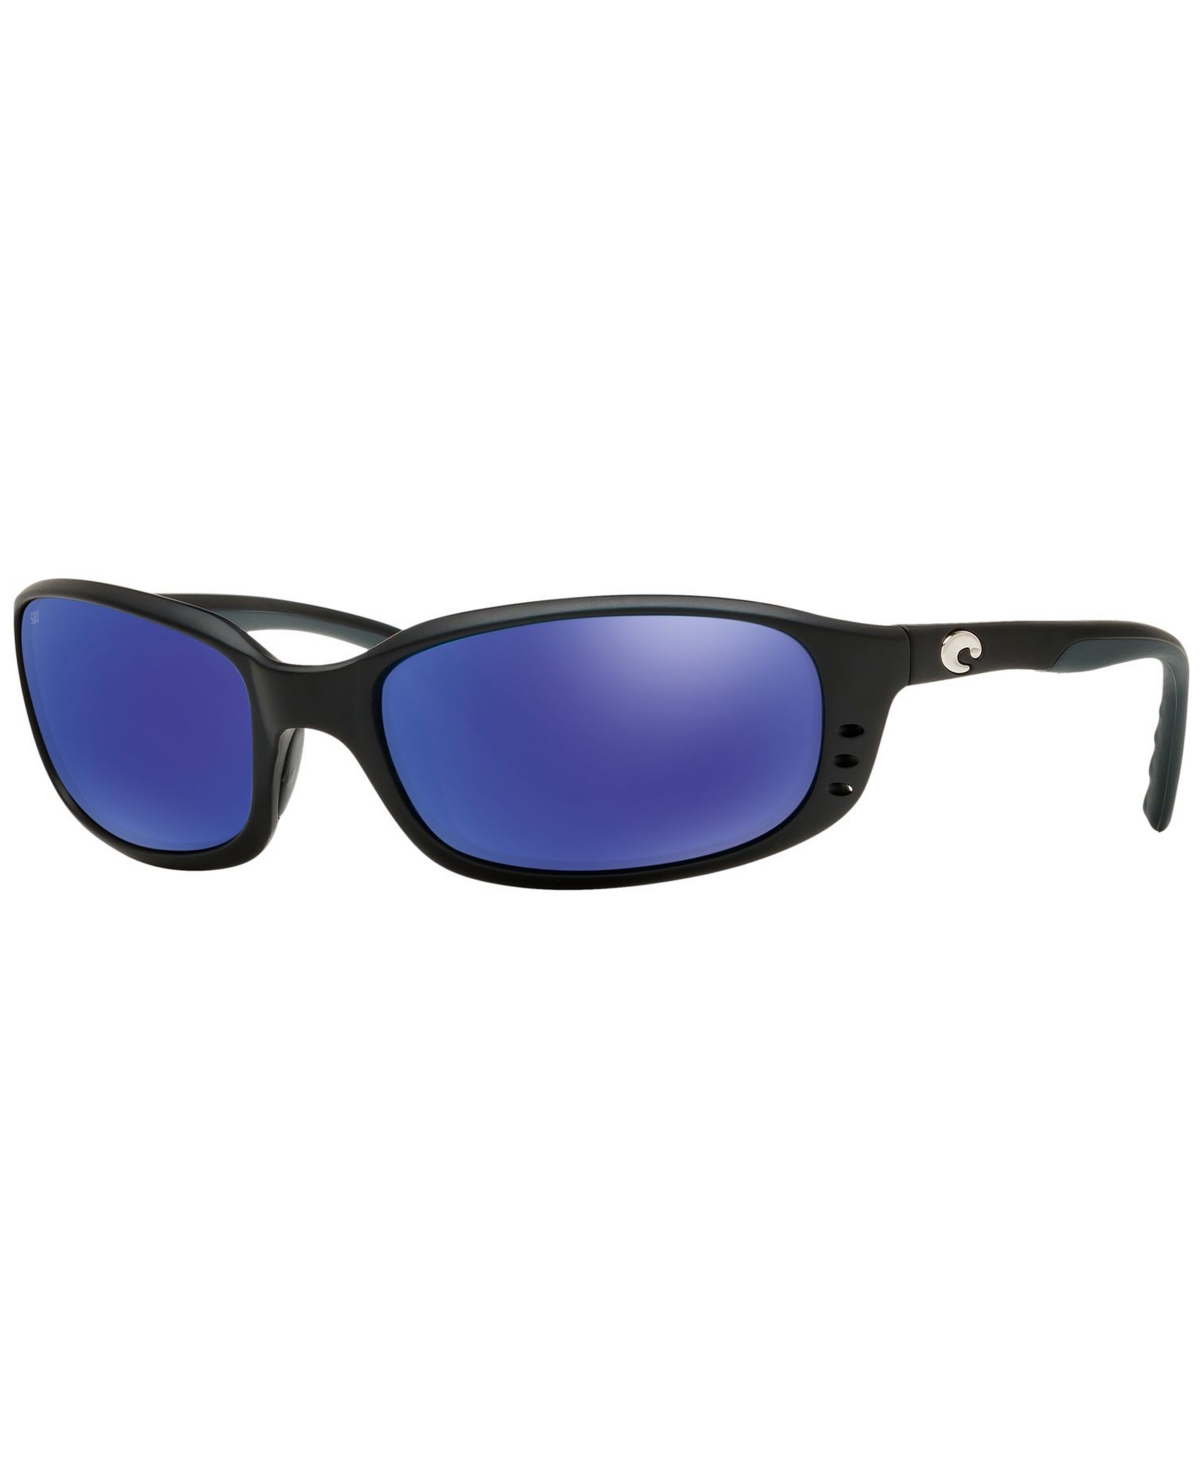 Costa Del Mar Polarized Sunglasses, Brinep